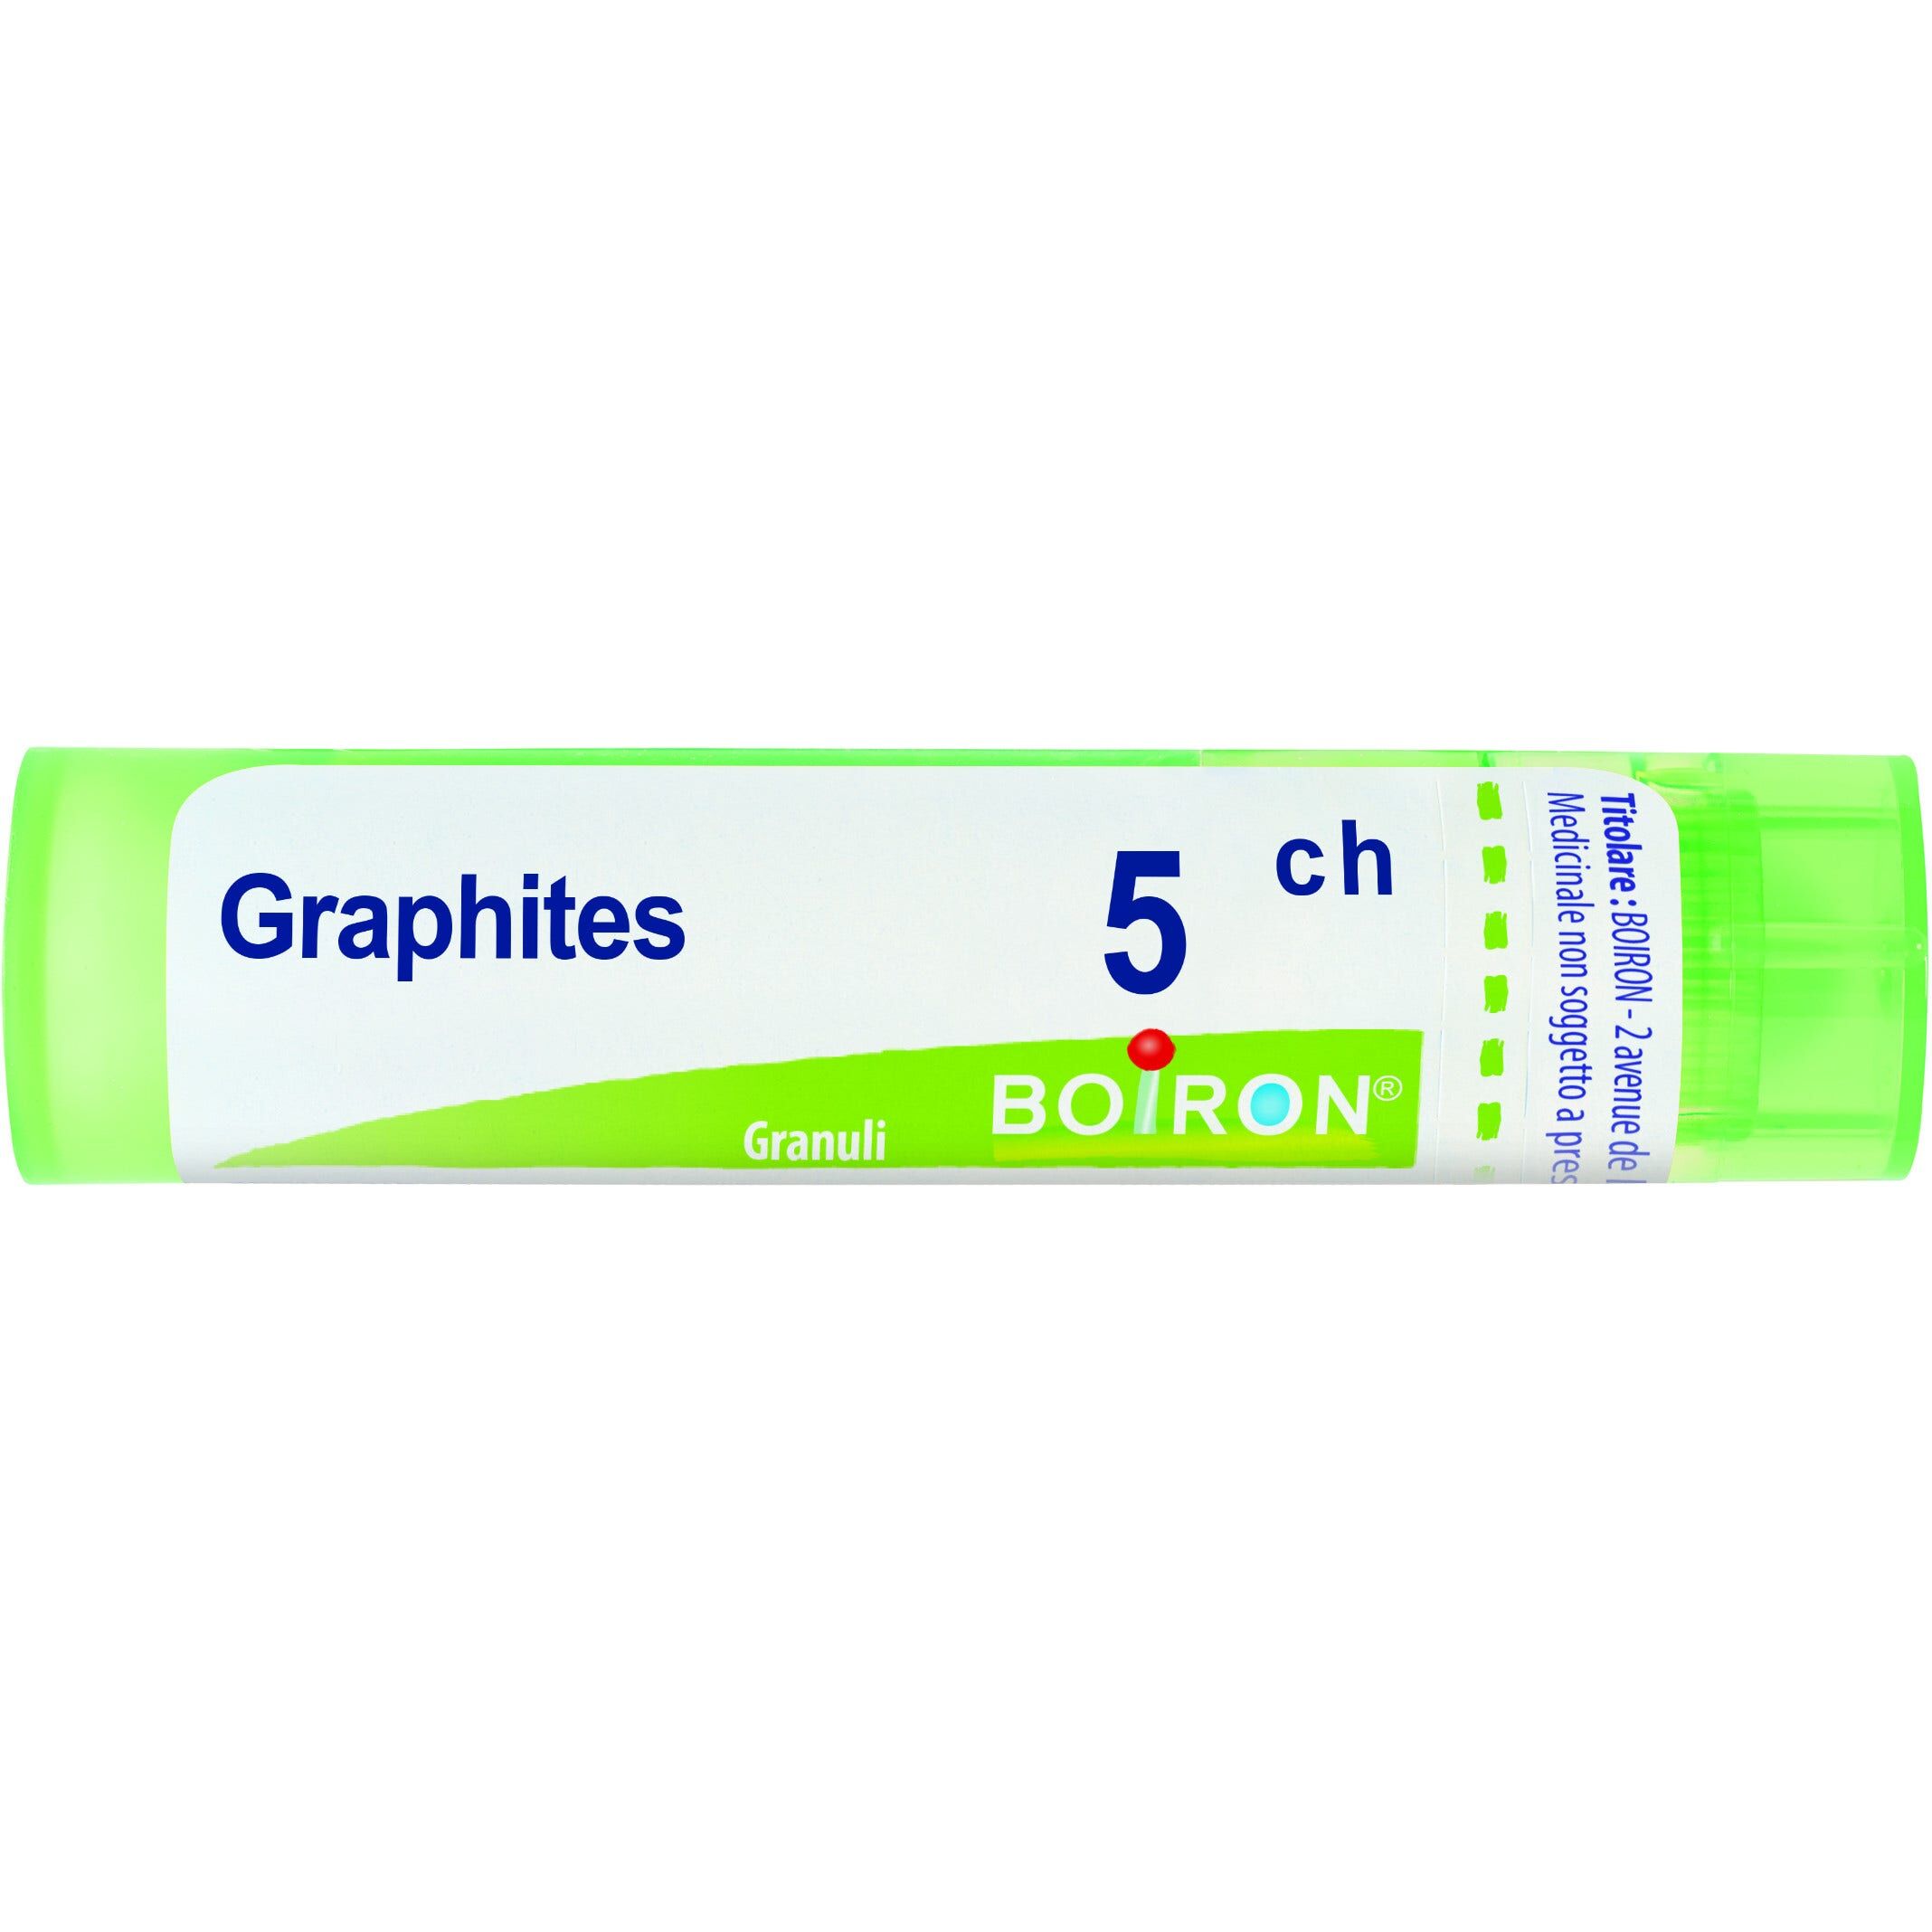 Boiron Graphites 7 Ch 80 Gr 4 G